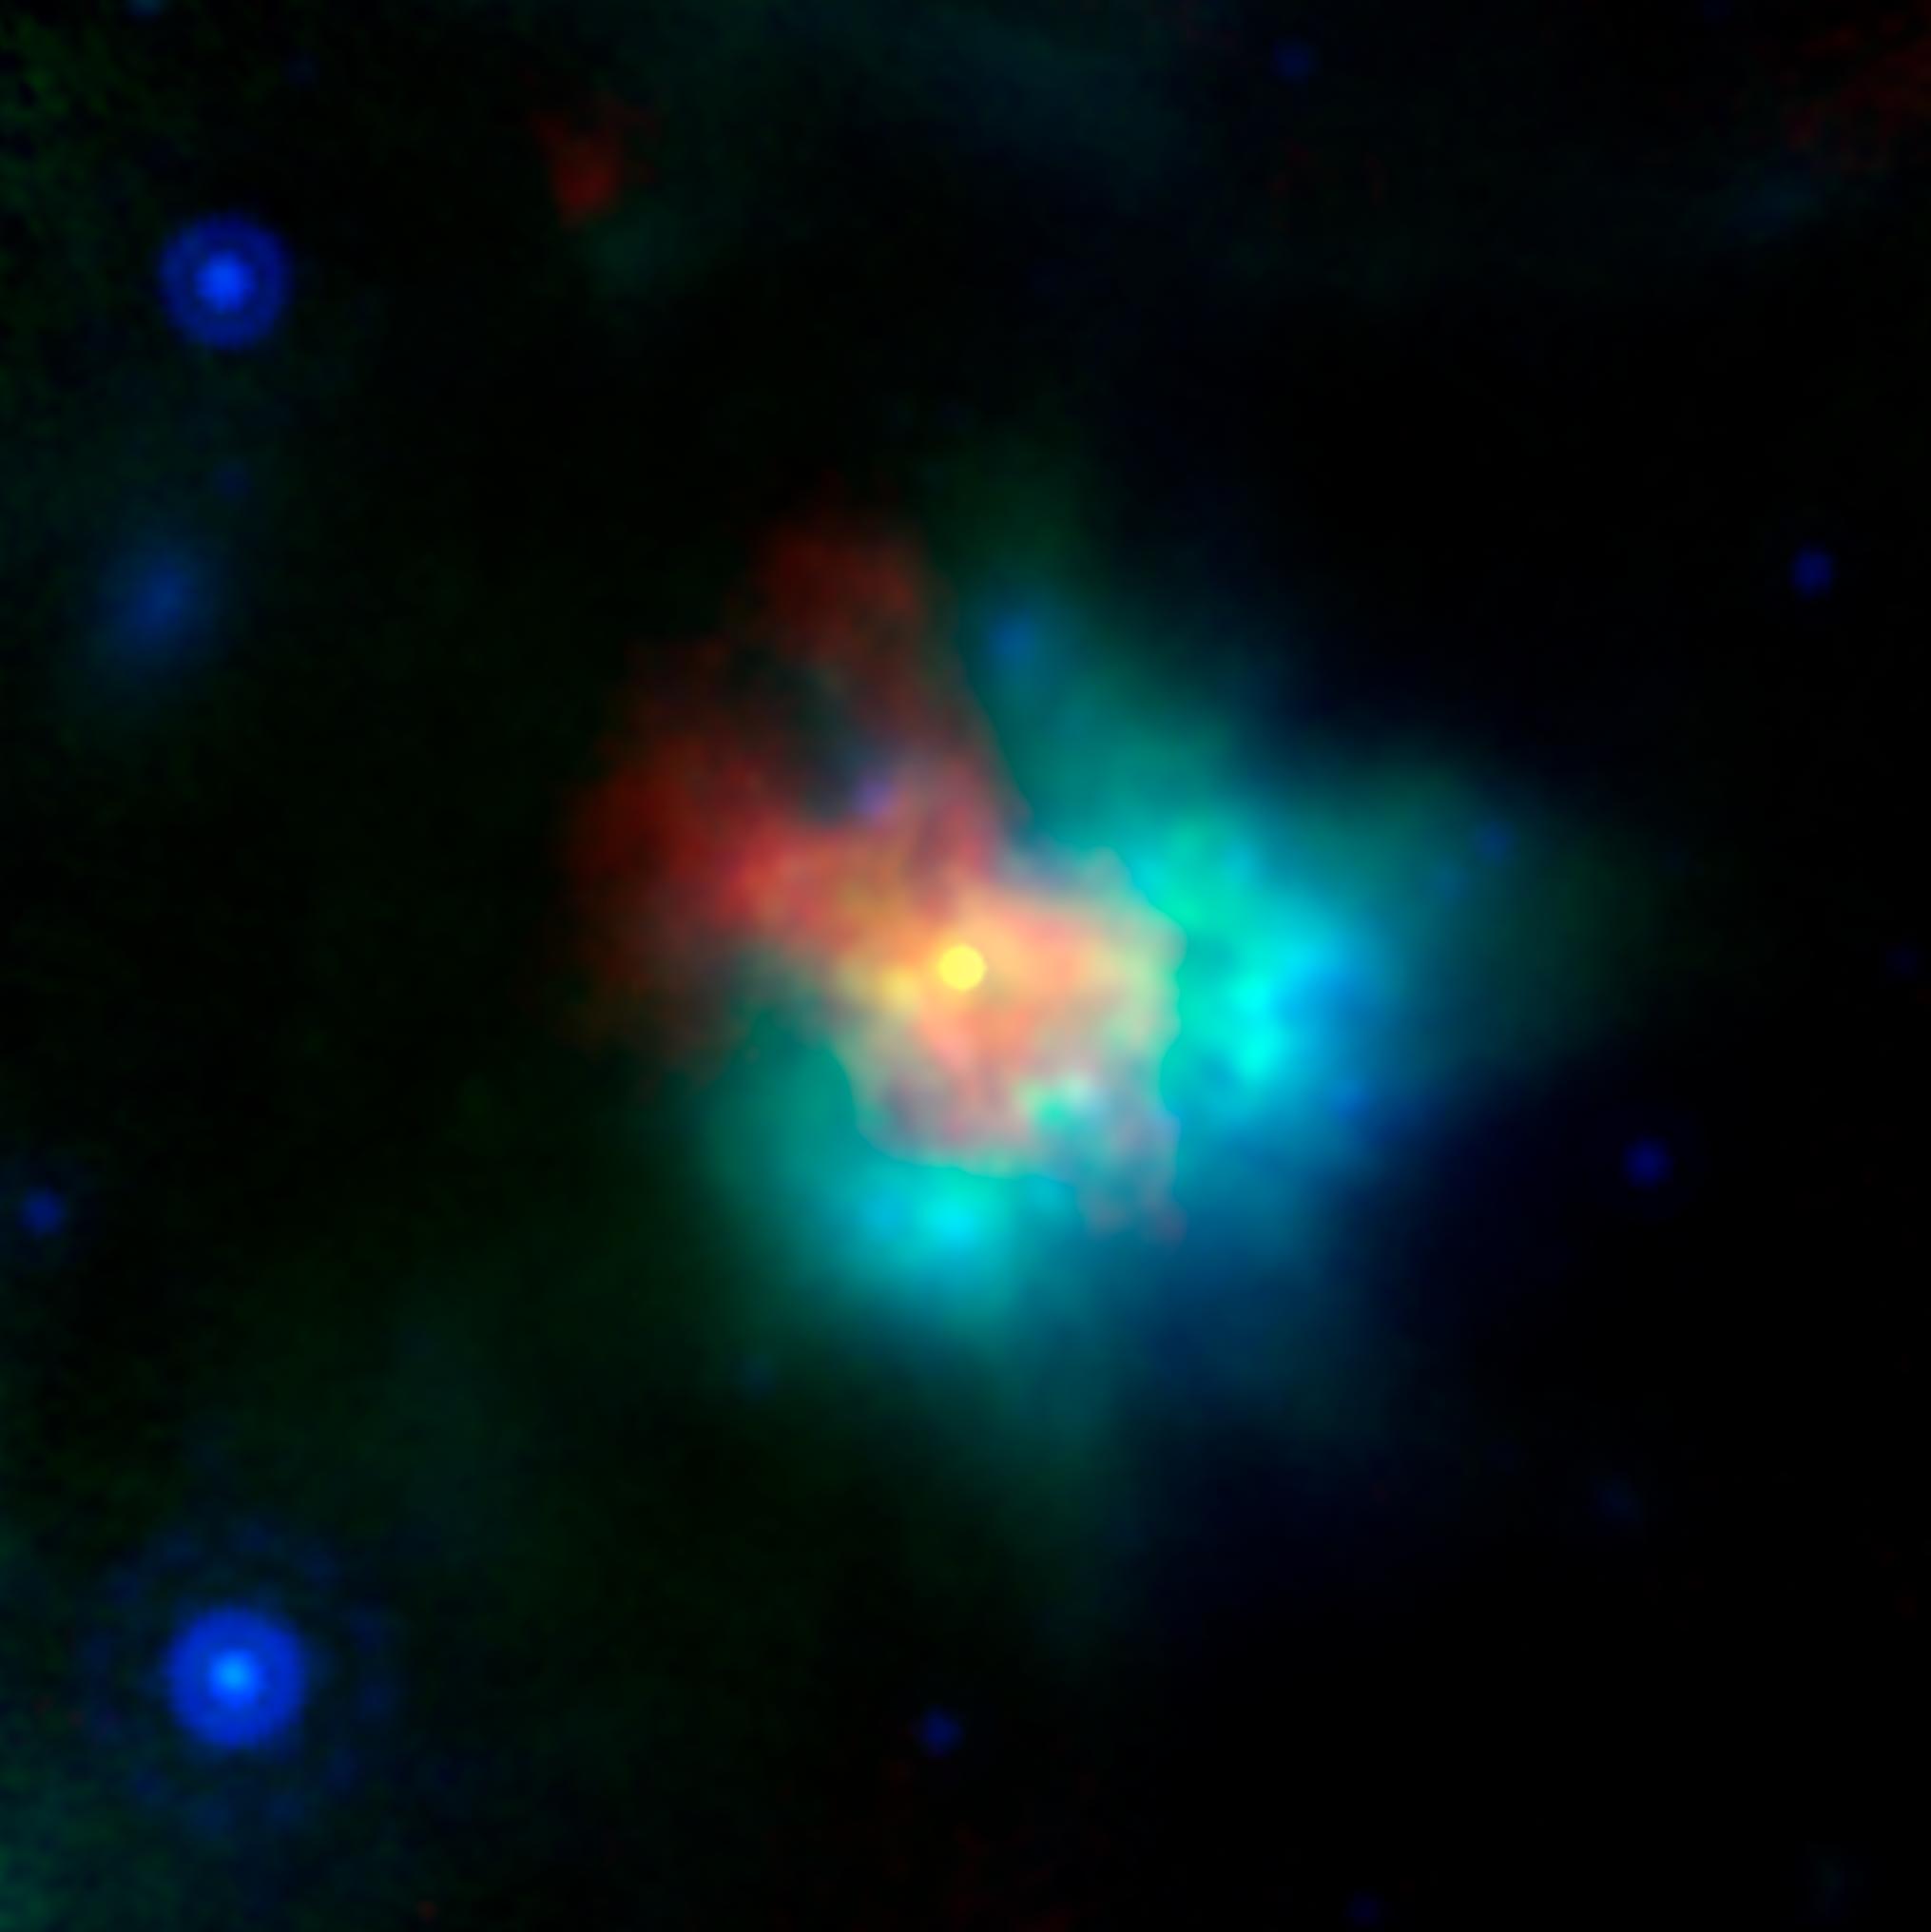 Supernova Remnant G54